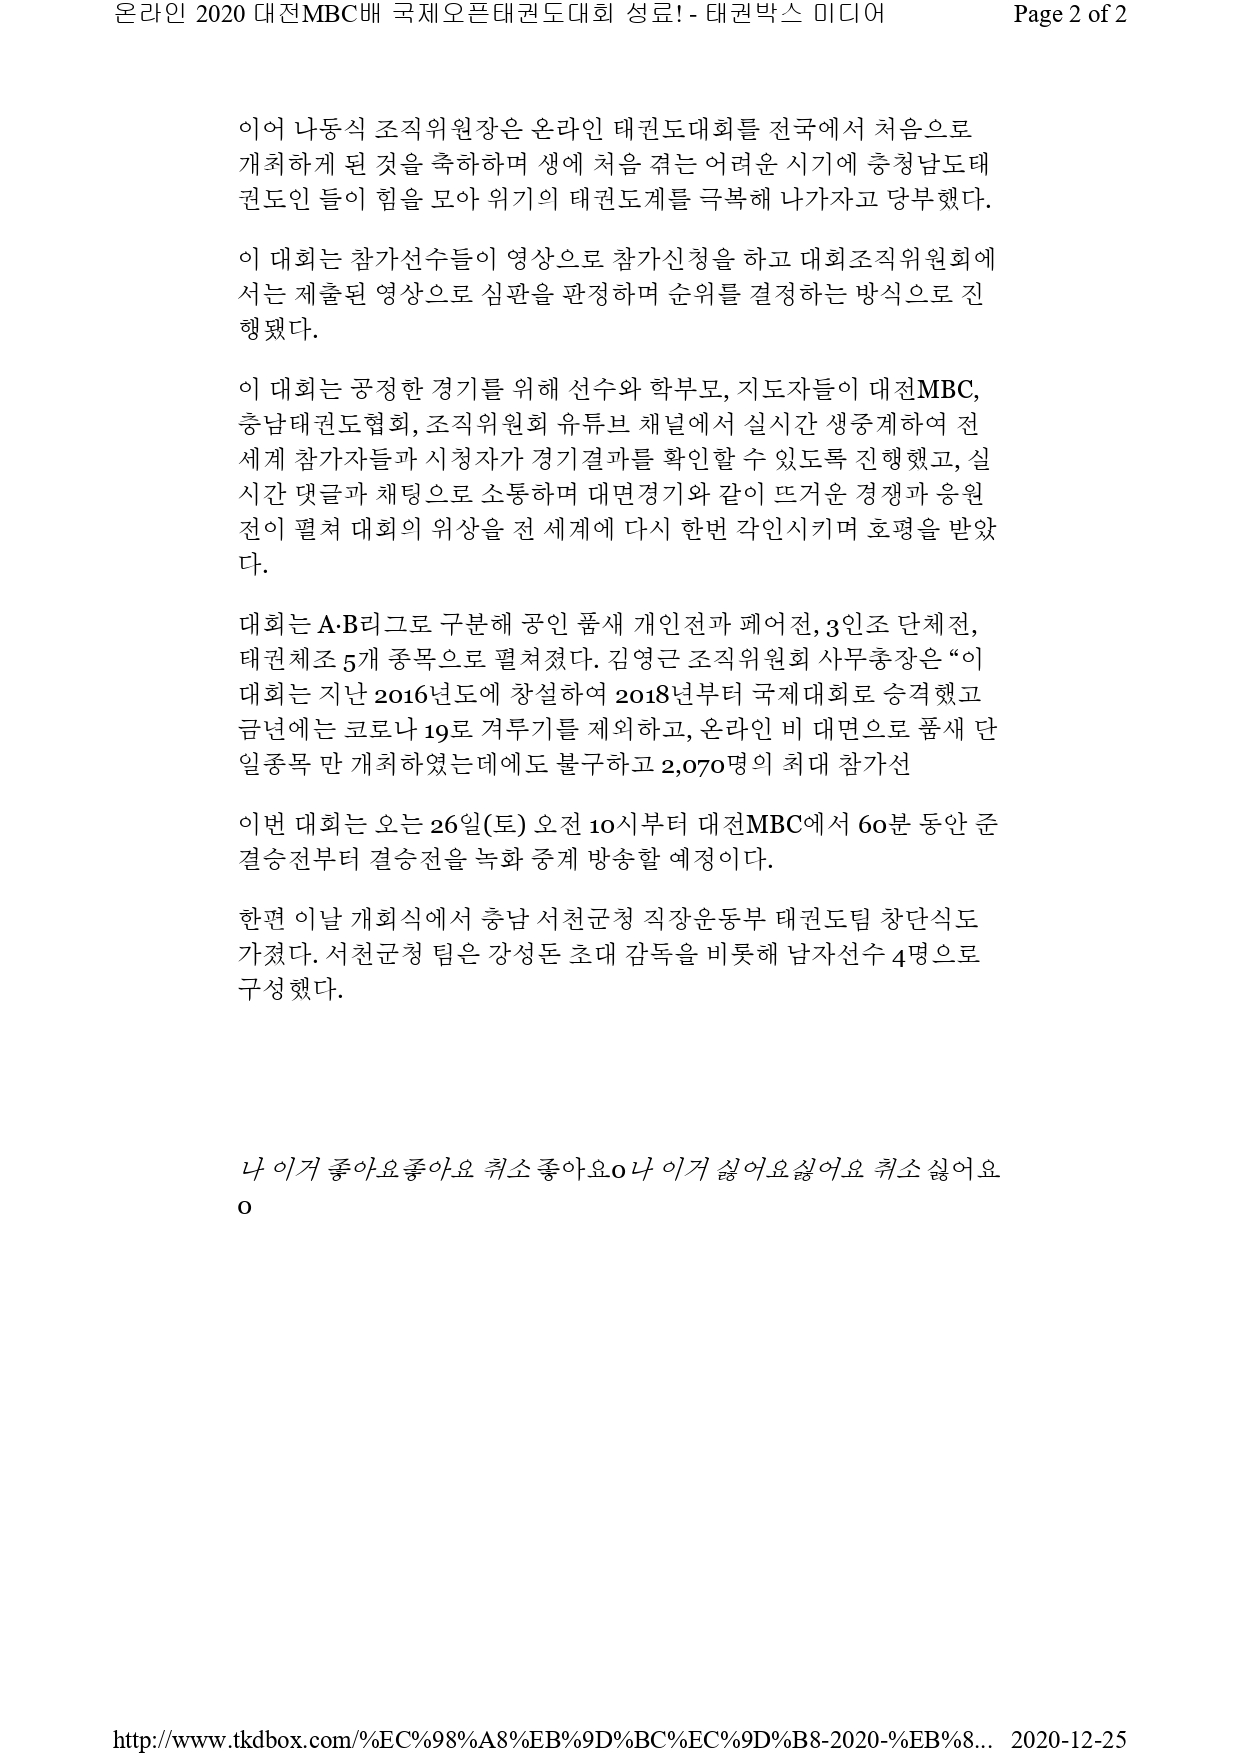 [태권박스미디어]온라인 2020 대전MBC배 국제오픈태권도대회 성료!_page-0002.jpg